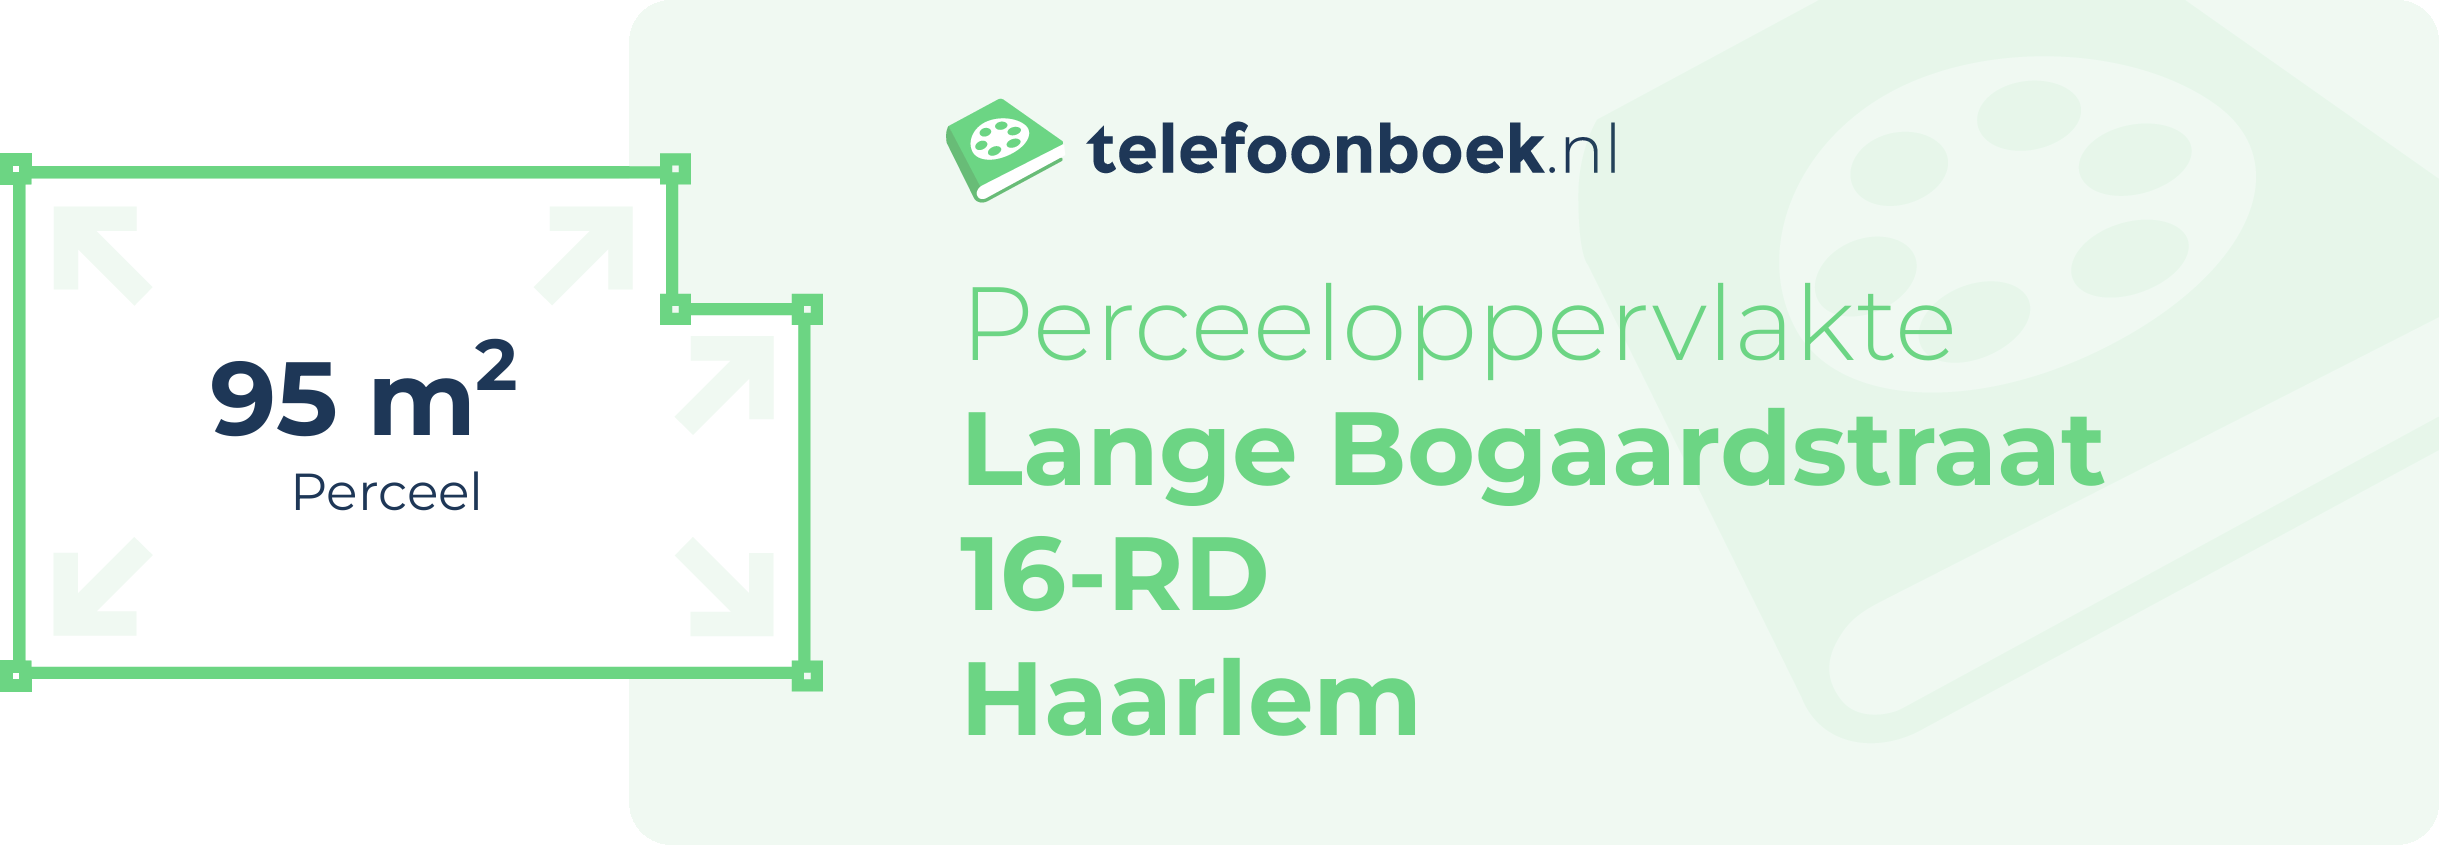 Perceeloppervlakte Lange Bogaardstraat 16-RD Haarlem